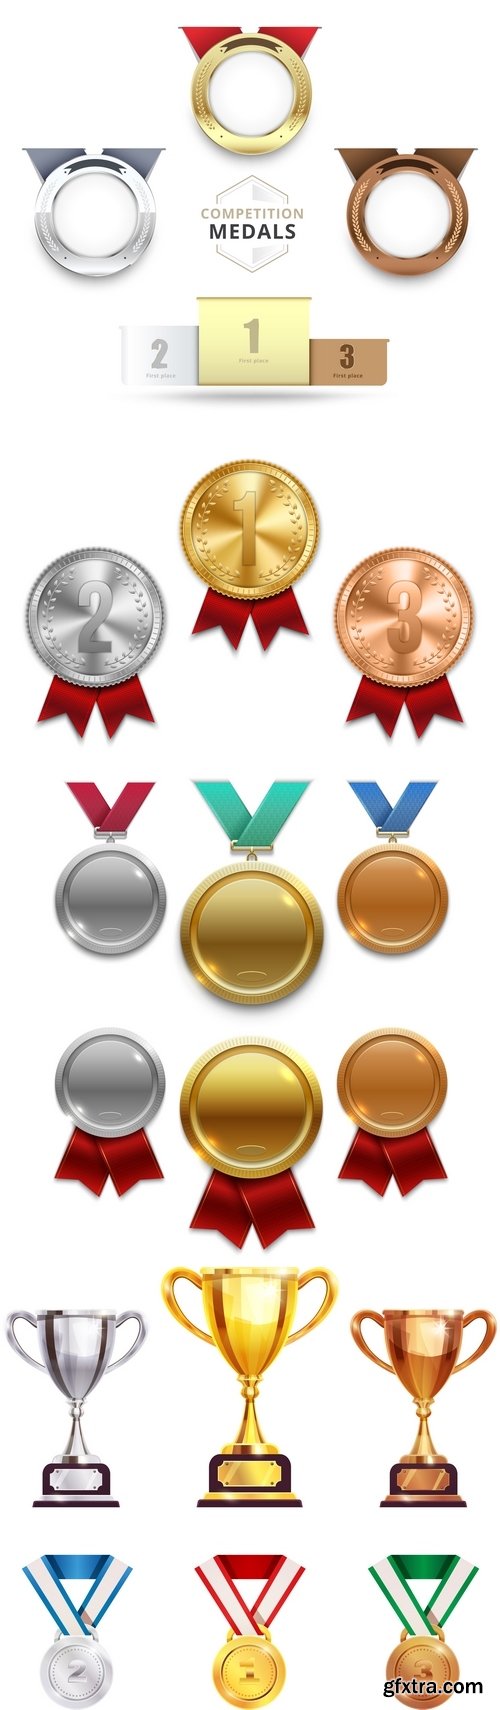 Vectors - Different Medals Set 4